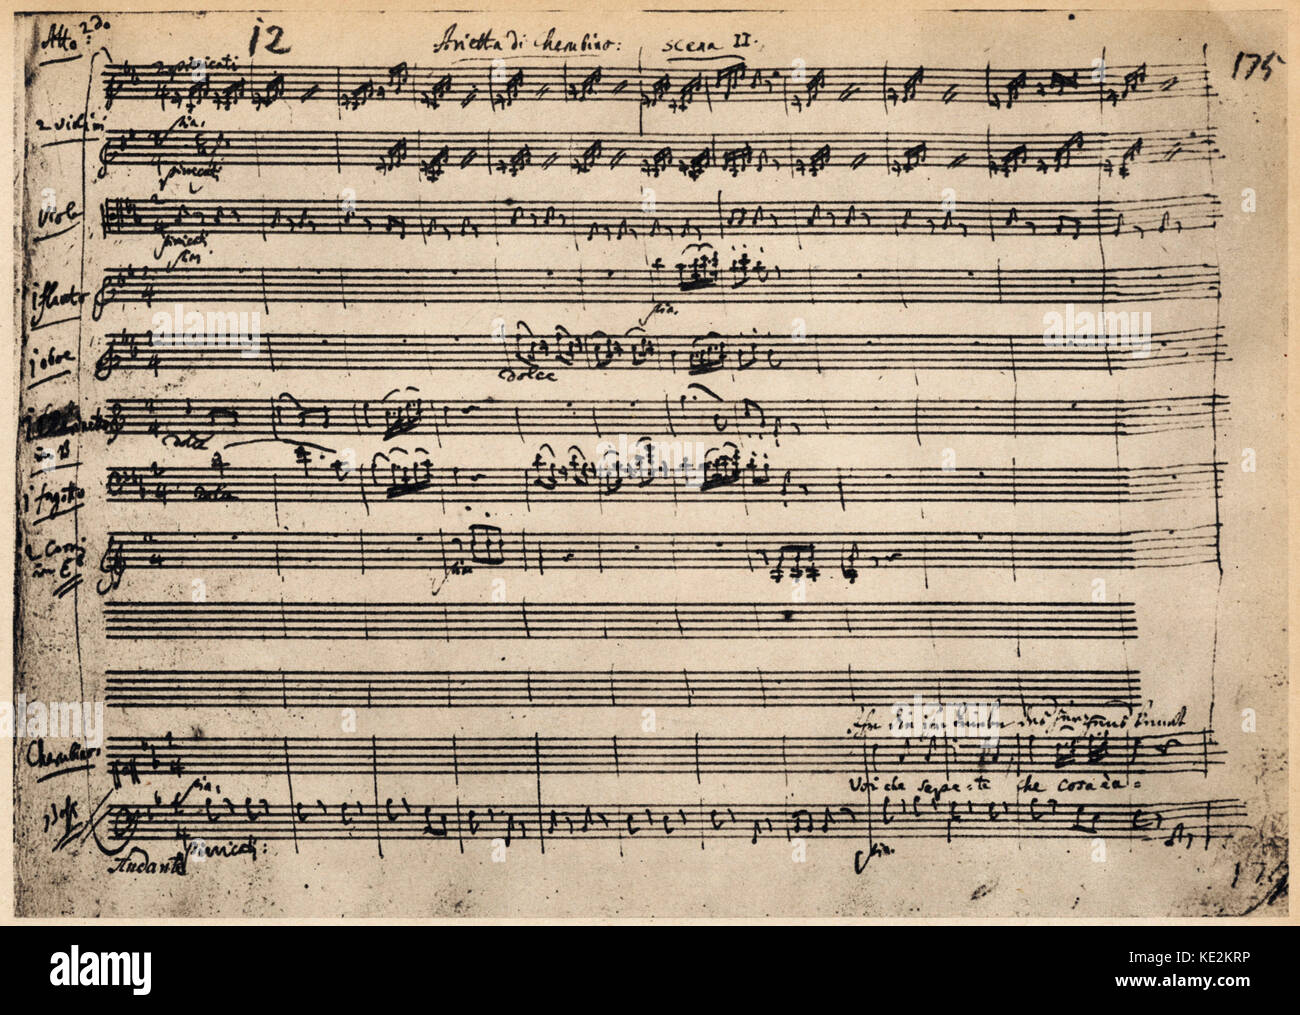 Wolfgang Amadeus Mozarts "Hochzeit des Figaro" - Beginn des Cherubini's Song - handschriftliches Manuskript Kerbe. Österreichischen Komponisten, 27. Januar 1756 - vom 5. Dezember 1791. Stockfoto